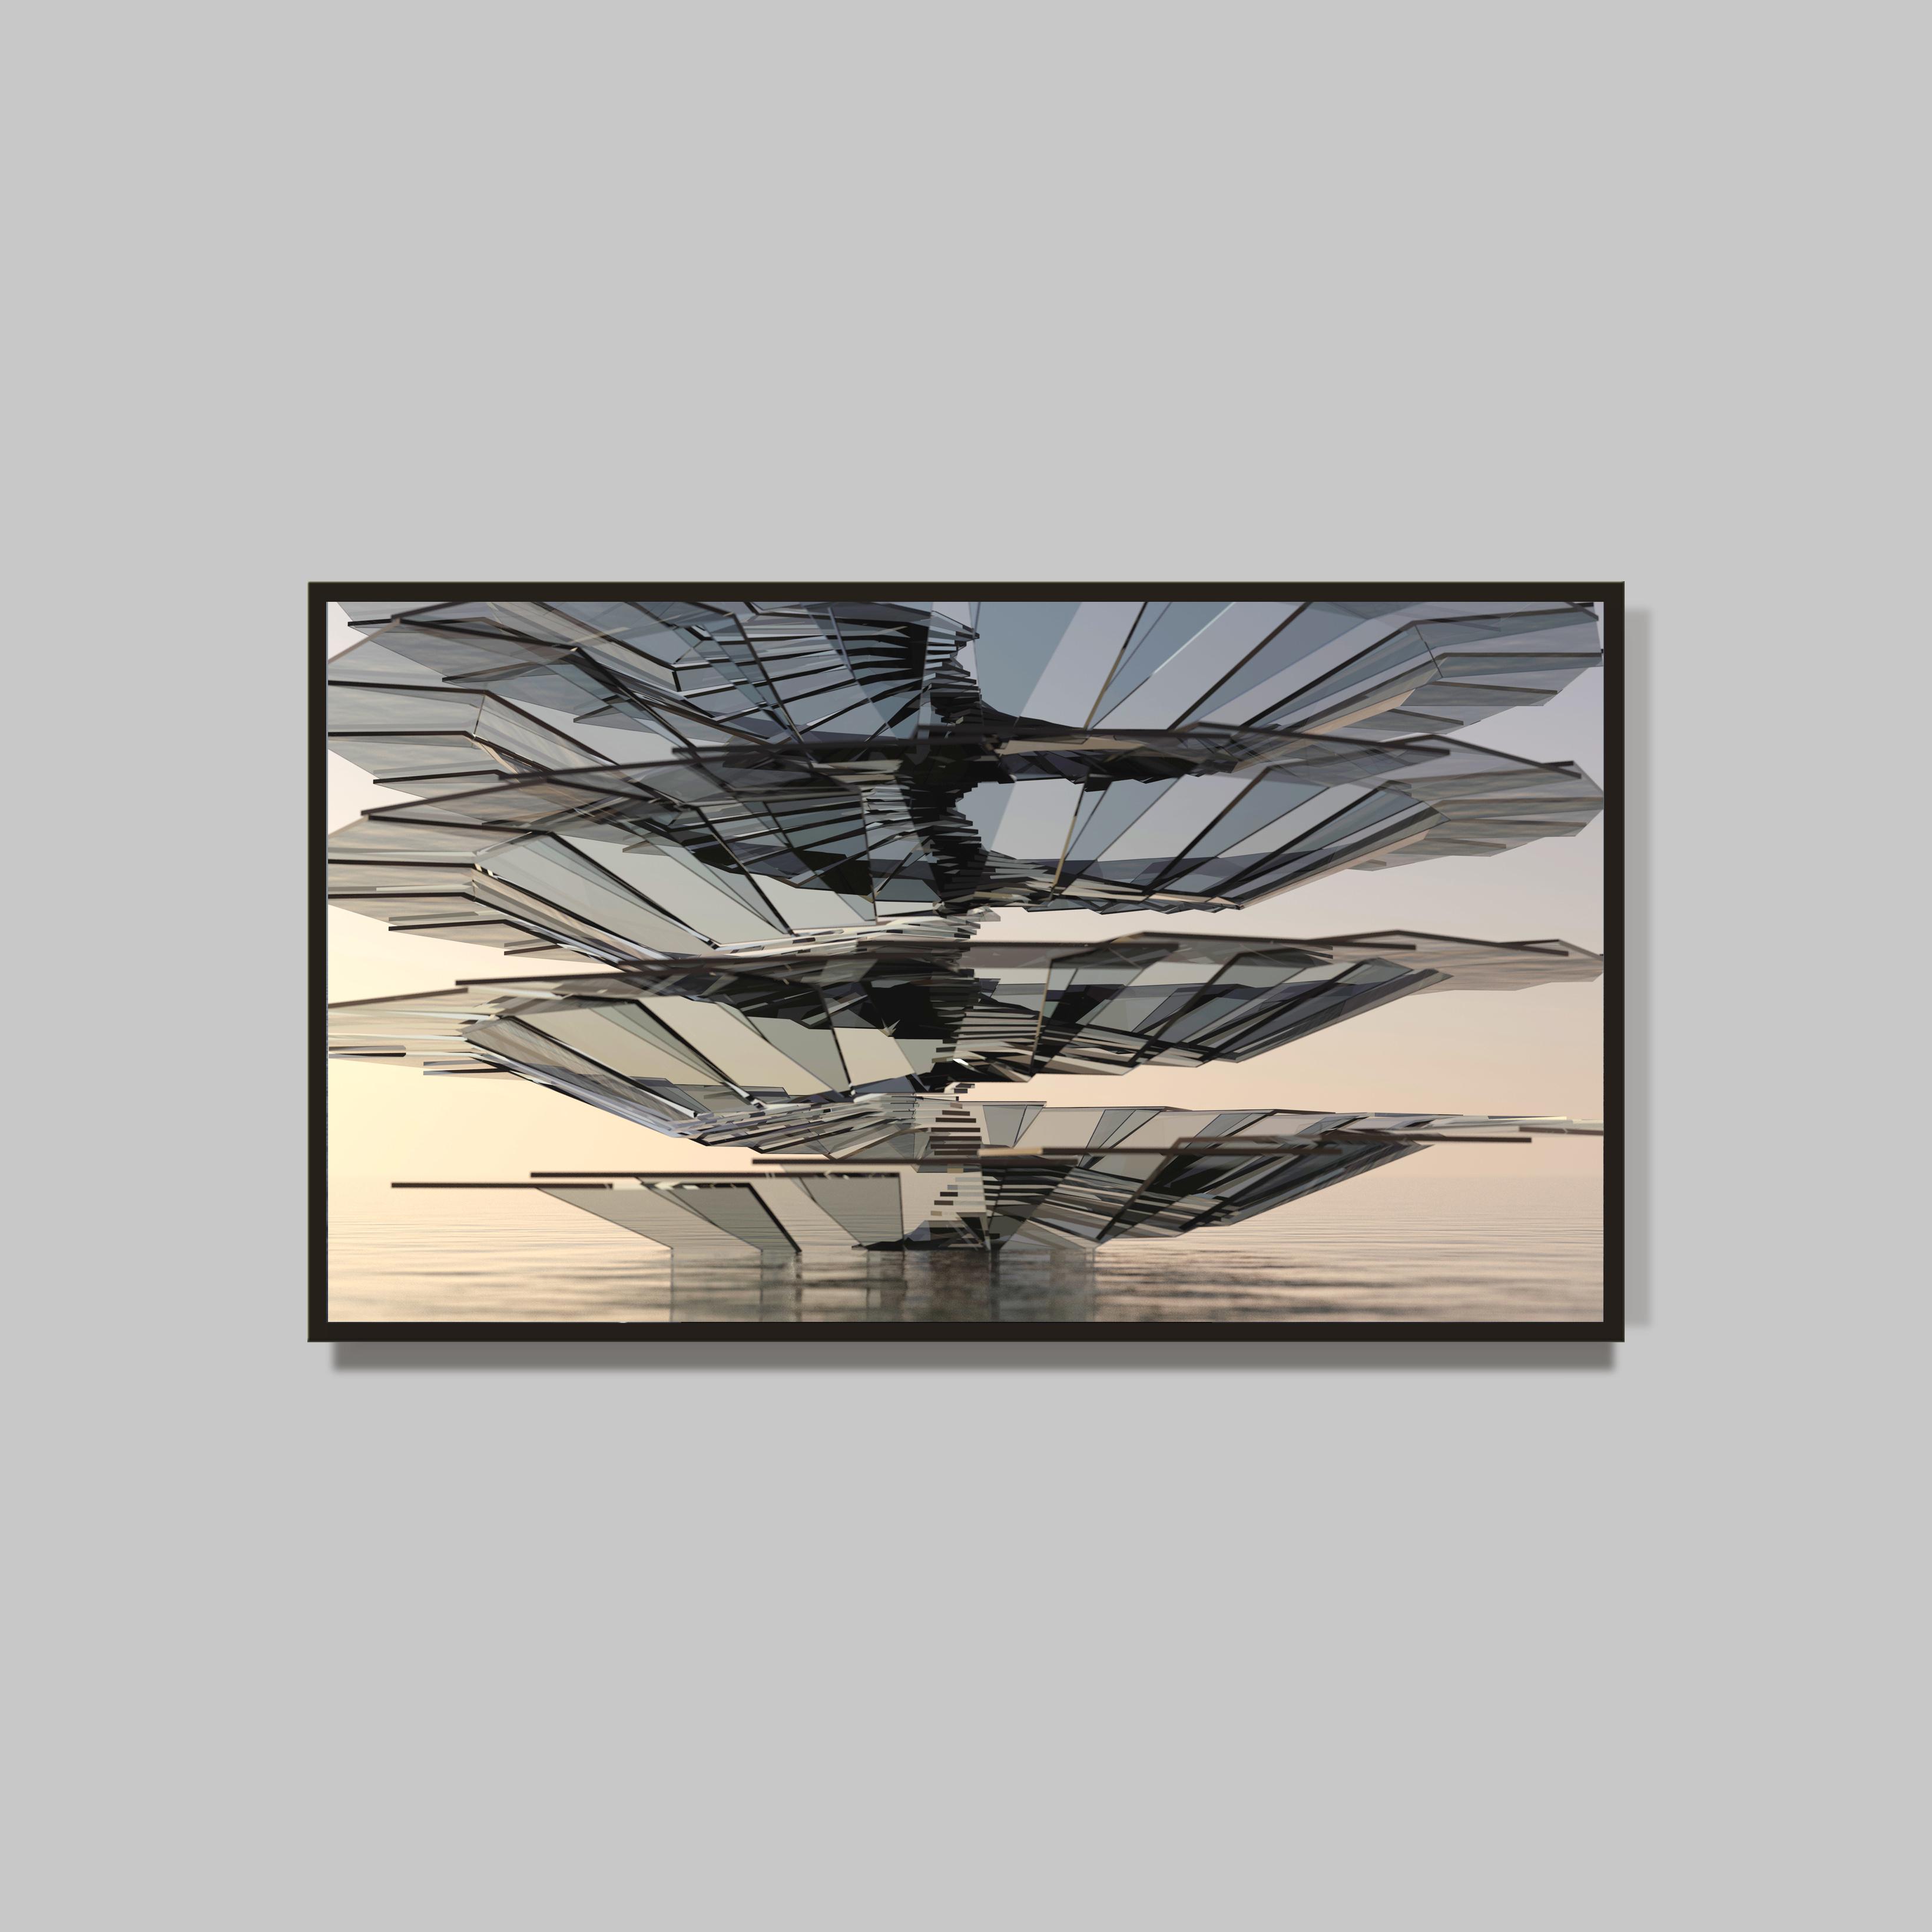 Ascension, 2013
Œuvre digitale
98 x 169 cm